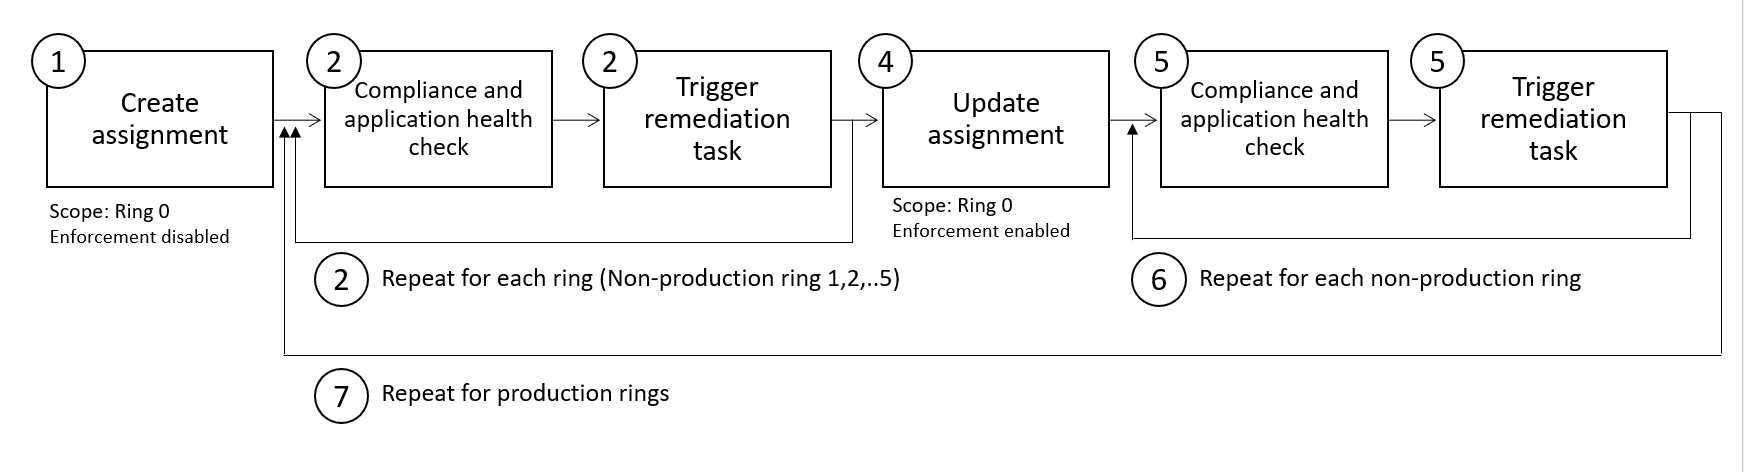 显示 Azure Policy 安全部署做法工作流的步骤 5 到步骤 9 的流程图。